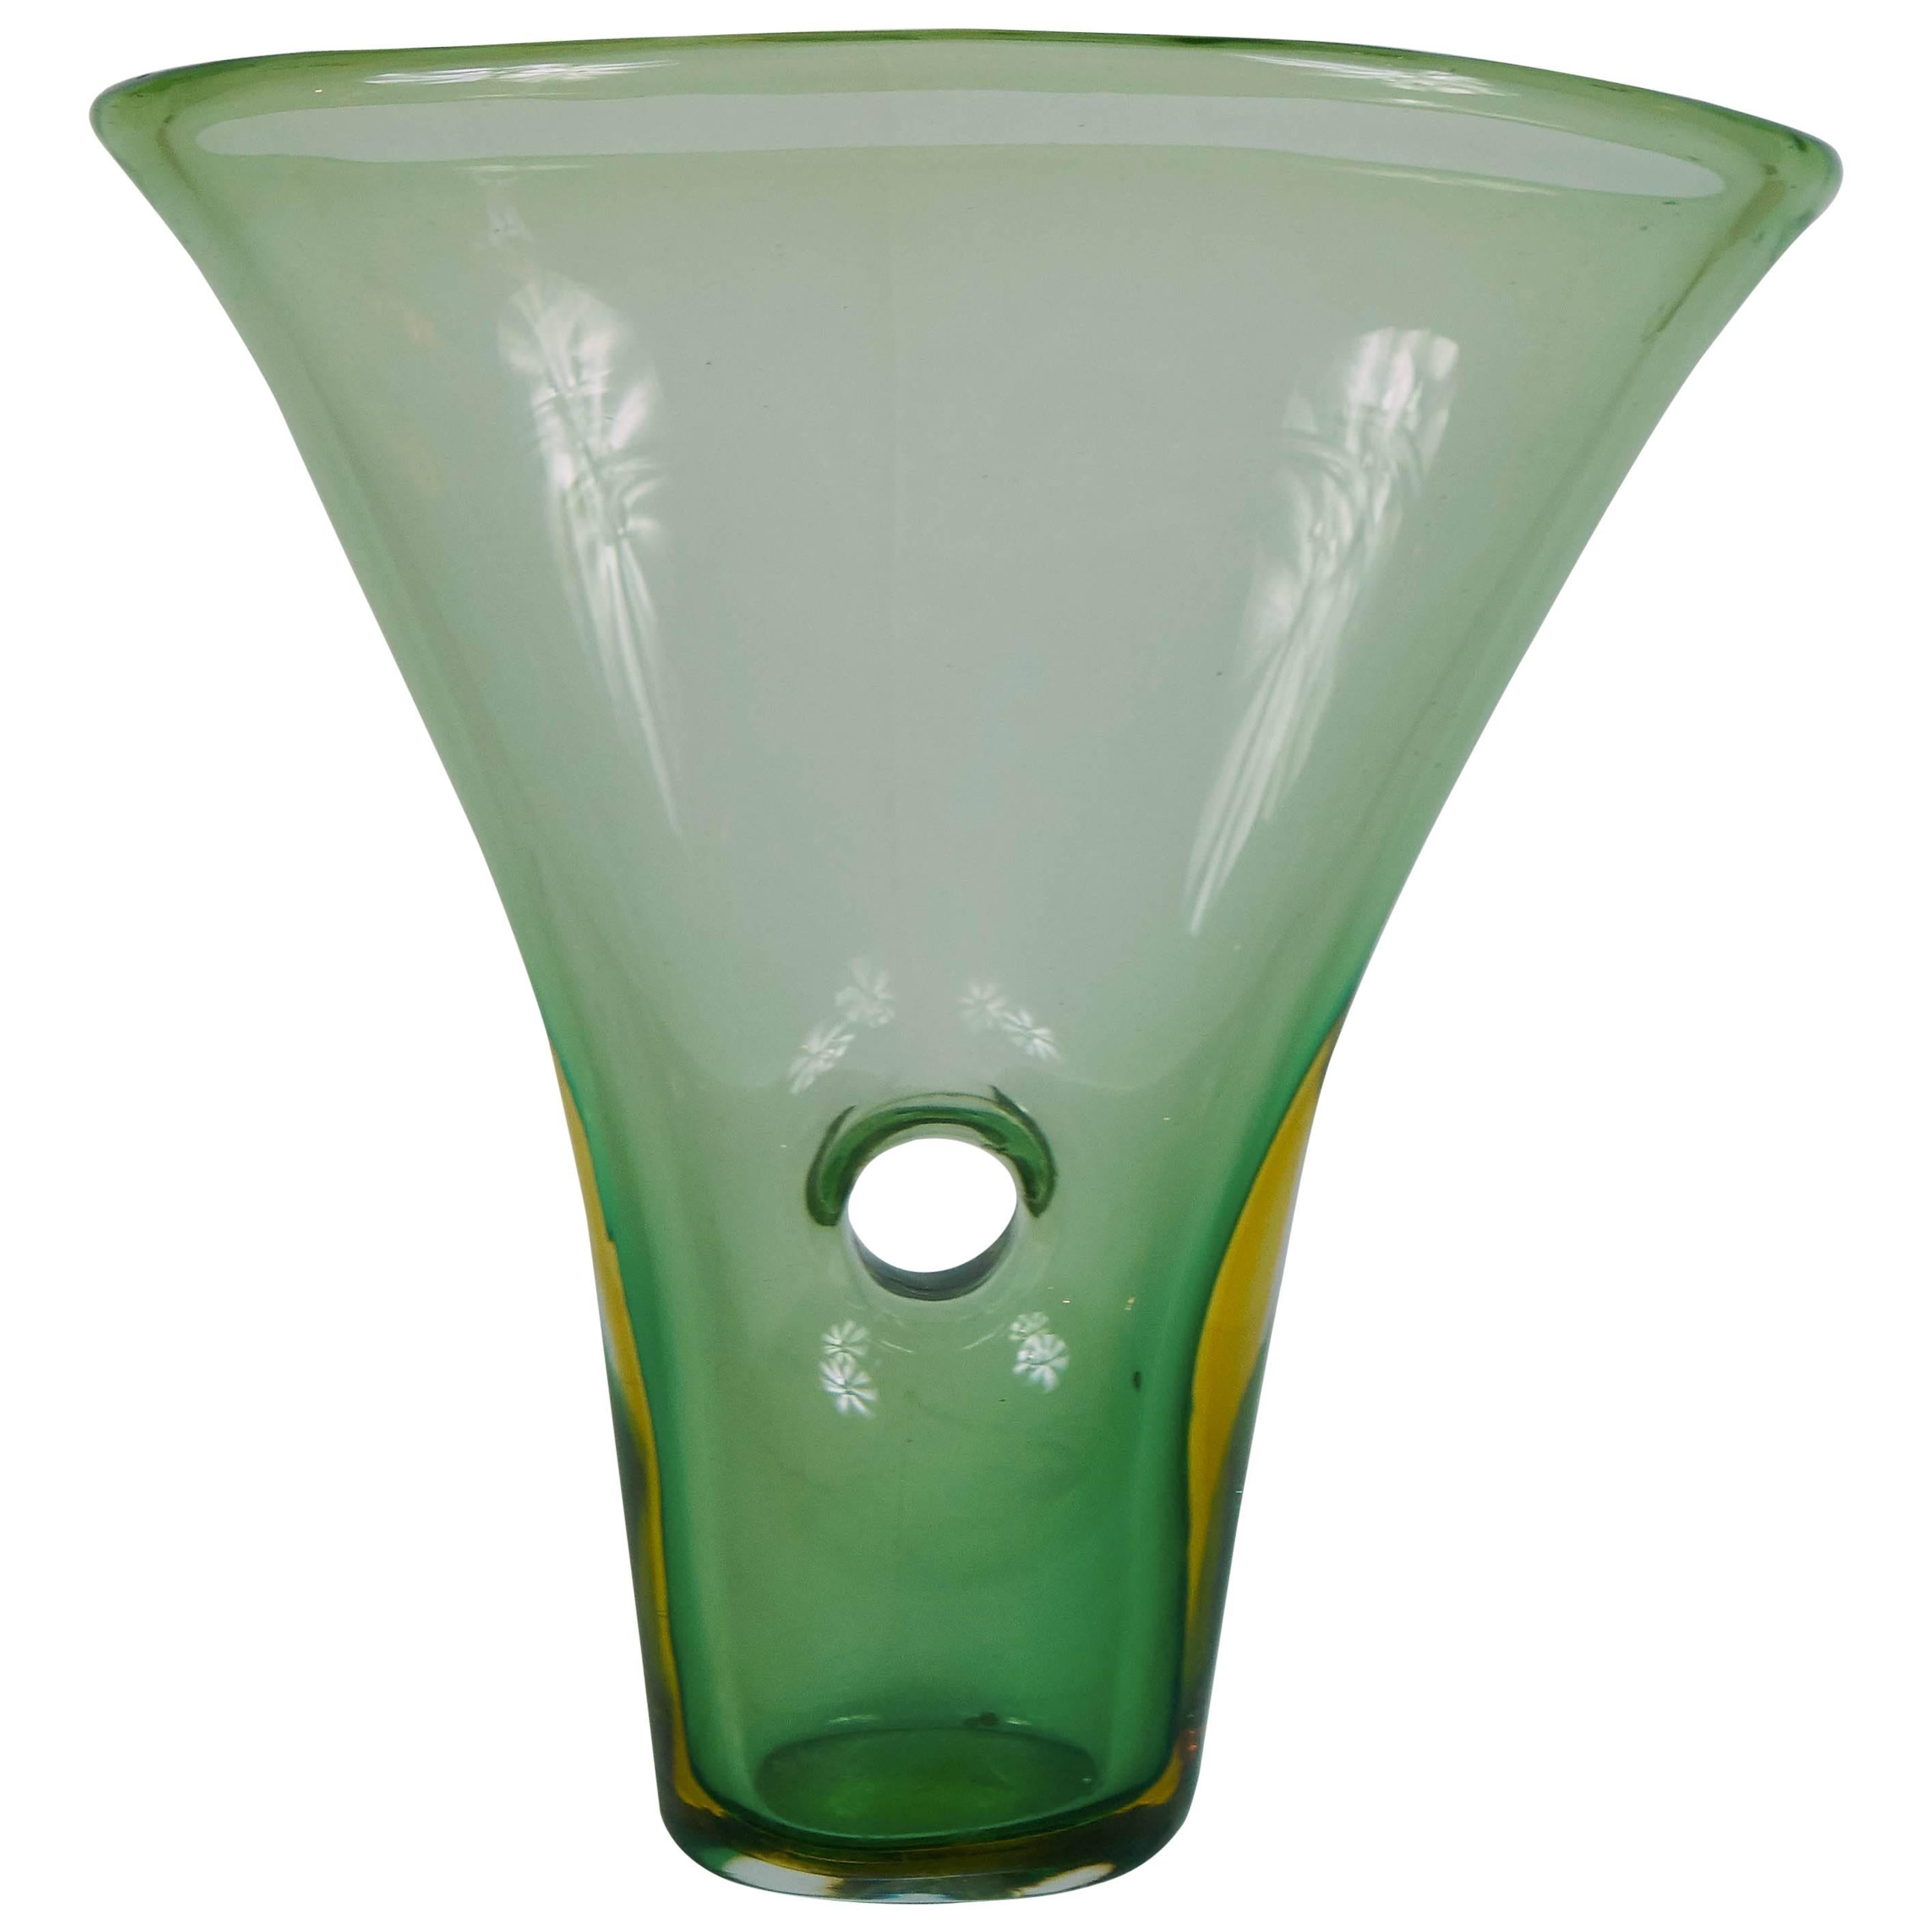 Vase Called "Forato" Venini Murano Glass by Fulvio Bianconi, Signed 1951 For Sale